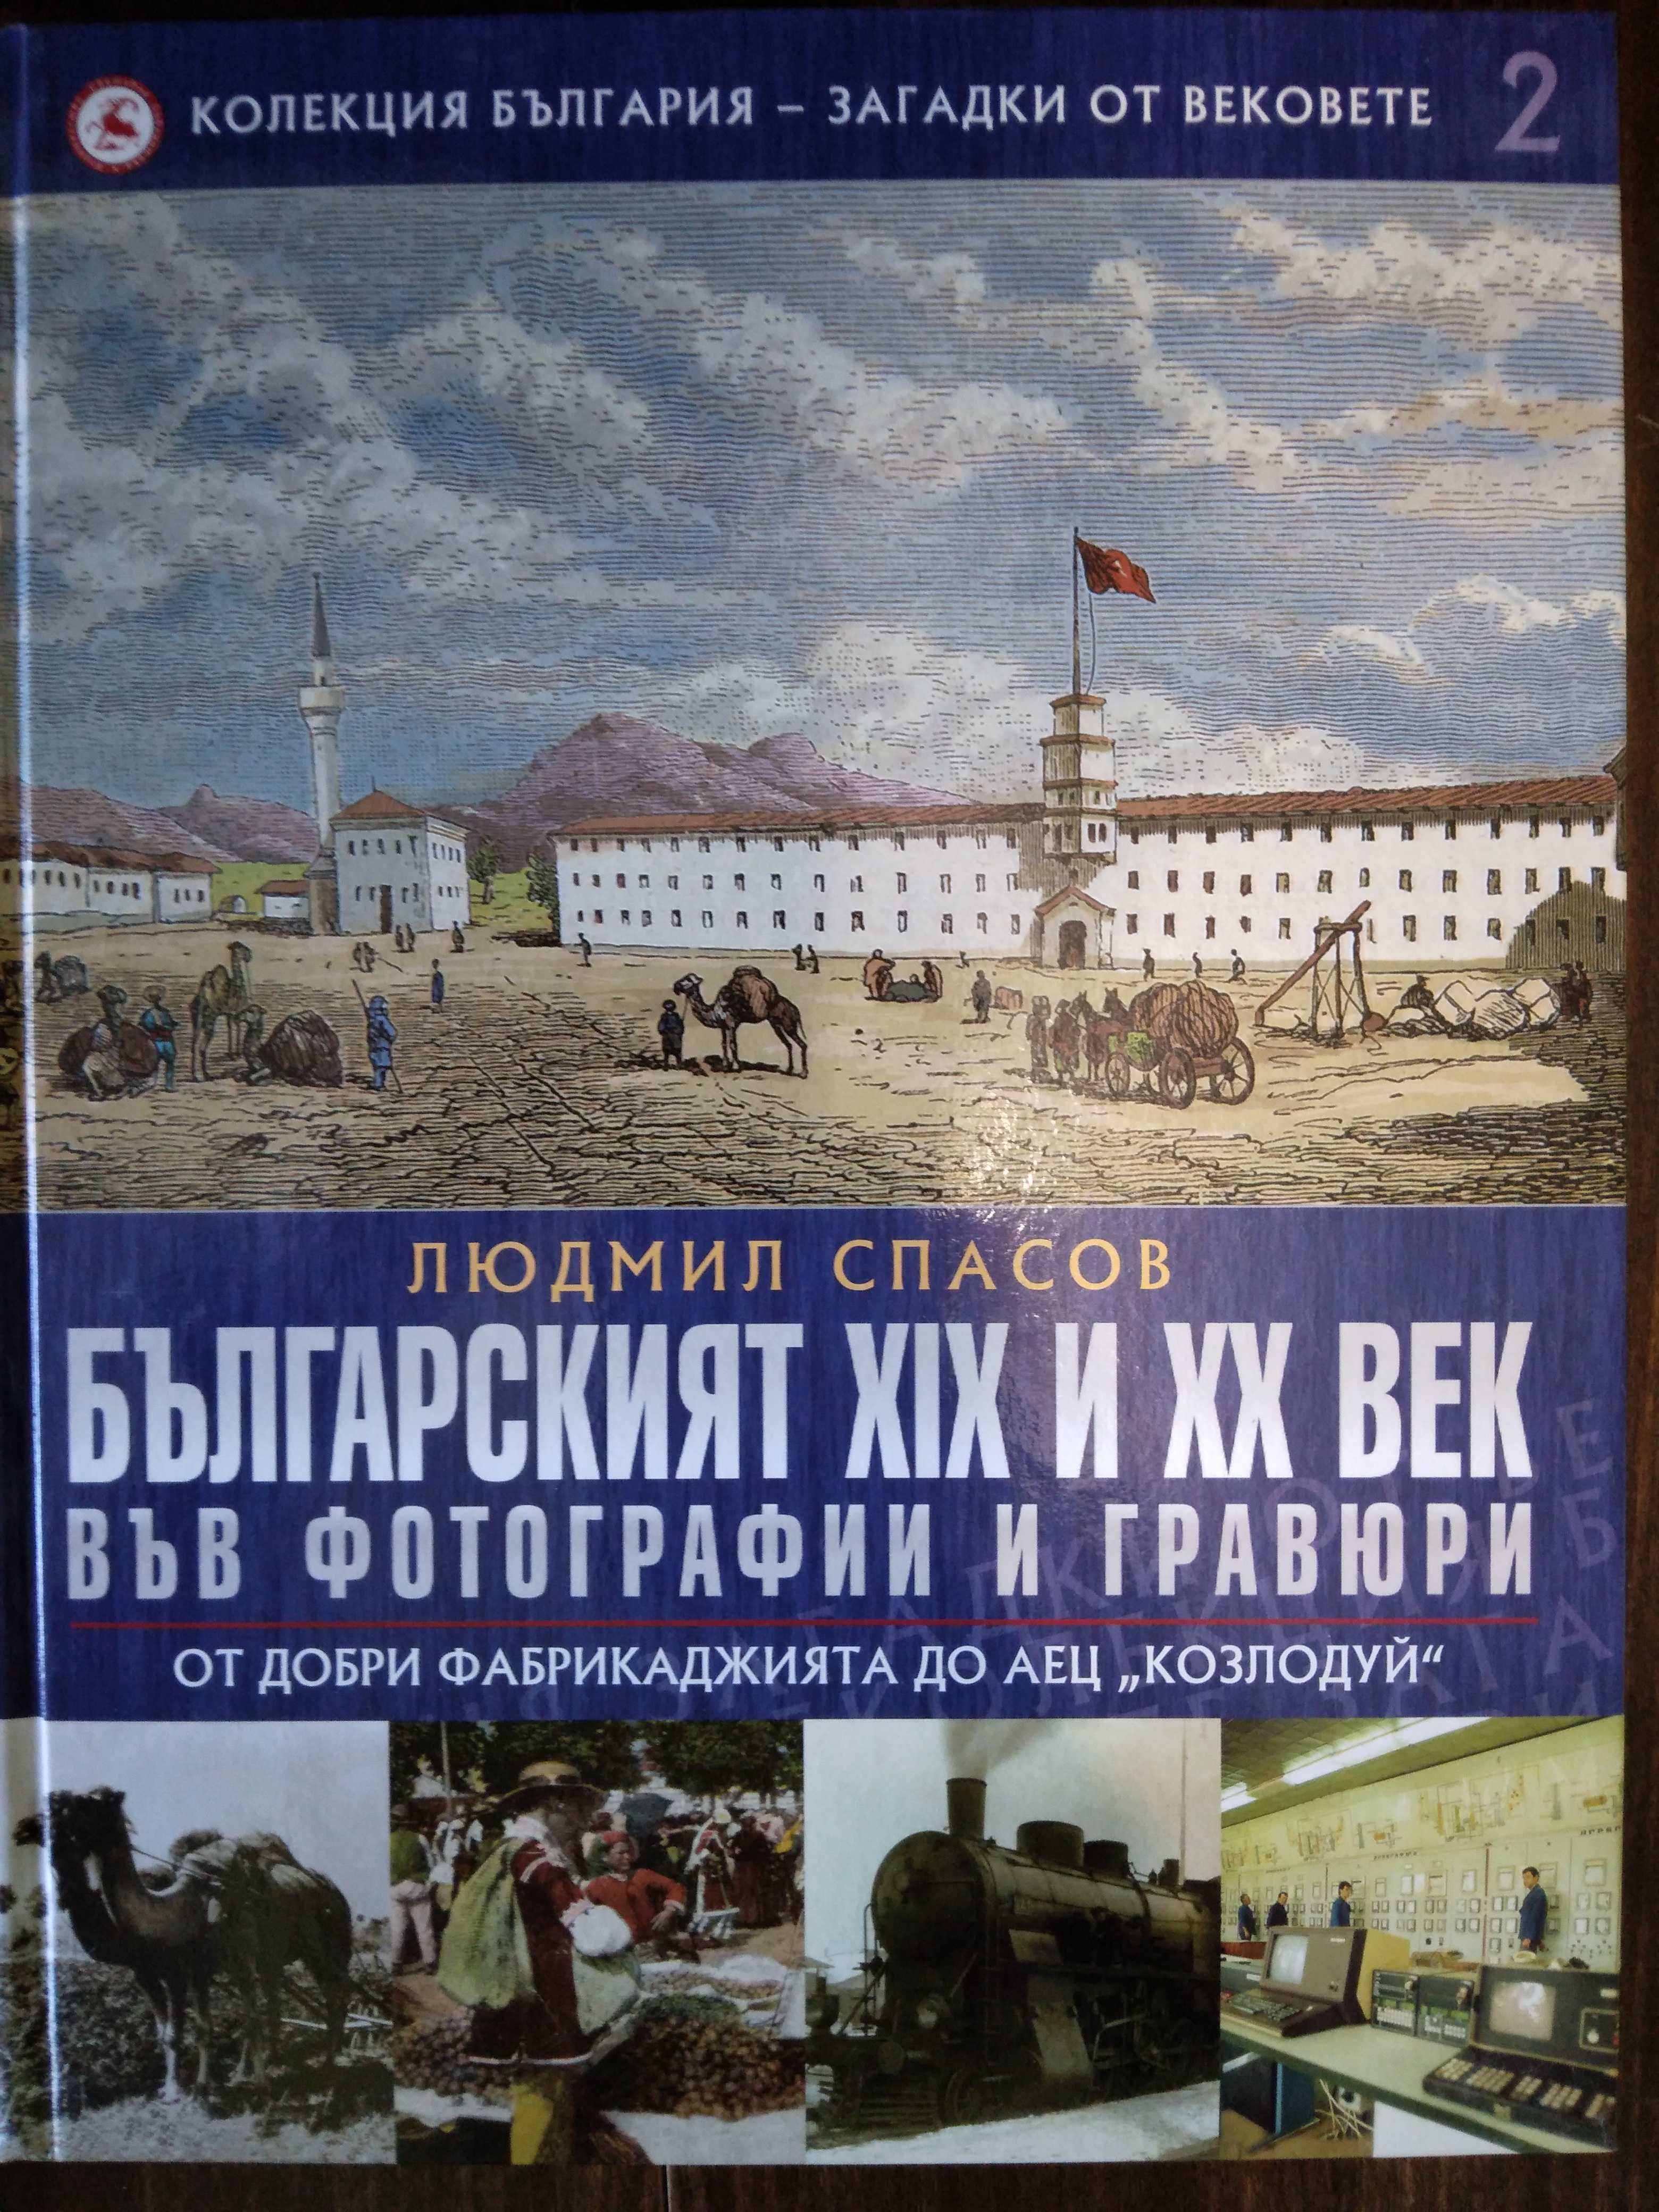 1, 2, 3, 5 и 6 том от поредицата - България - загадки от вековете